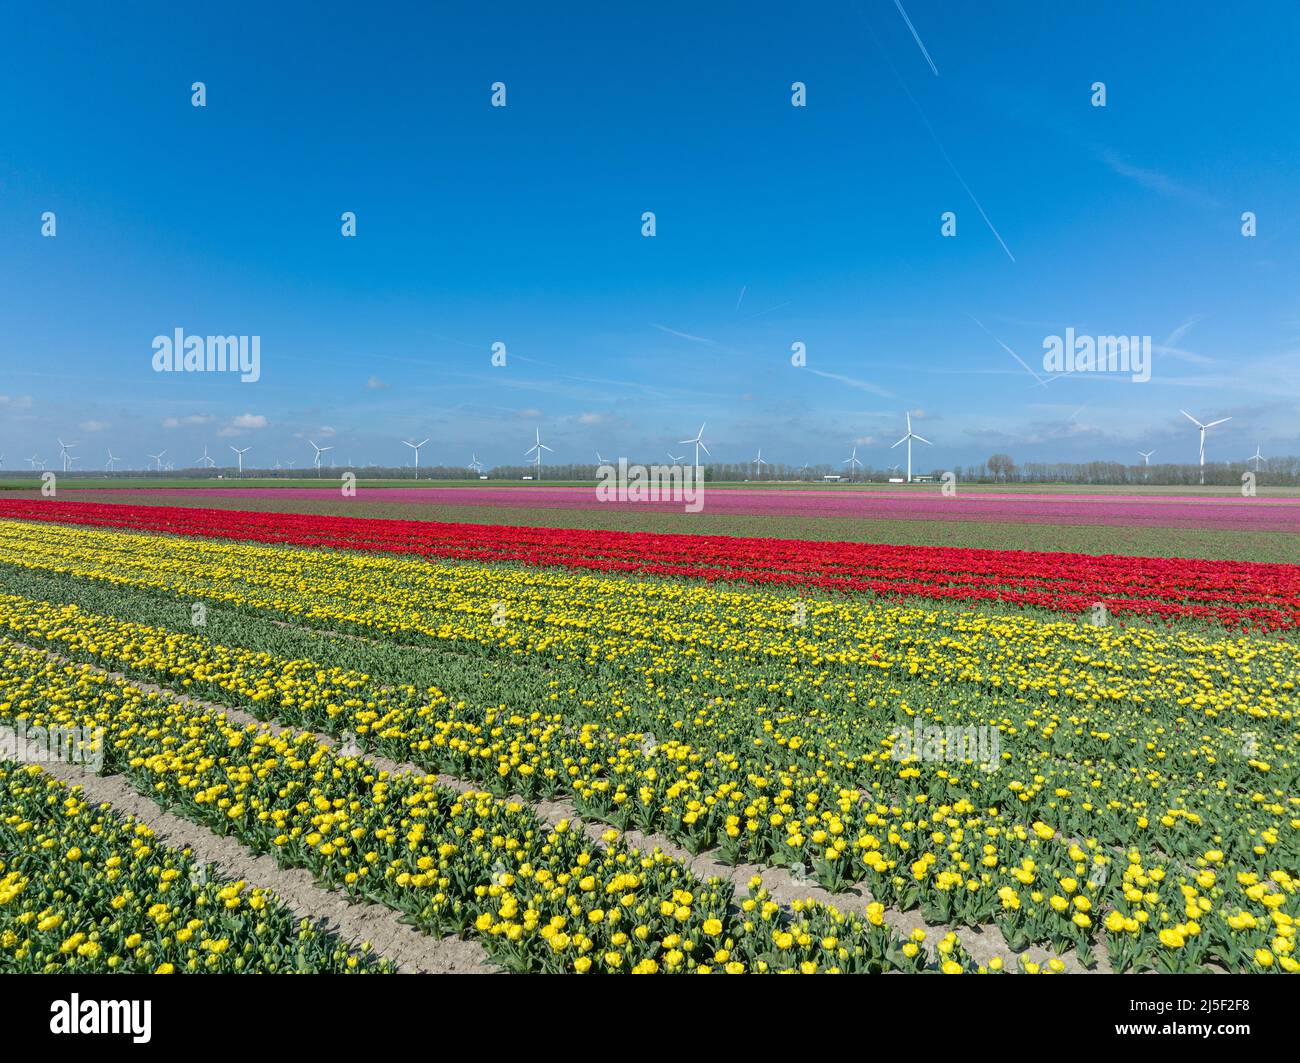 File di tulipani gialli, rossi e rosa a Flevoland Paesi Bassi con turbine eoliche che girano all'orizzonte, vista aerea. Foto Stock